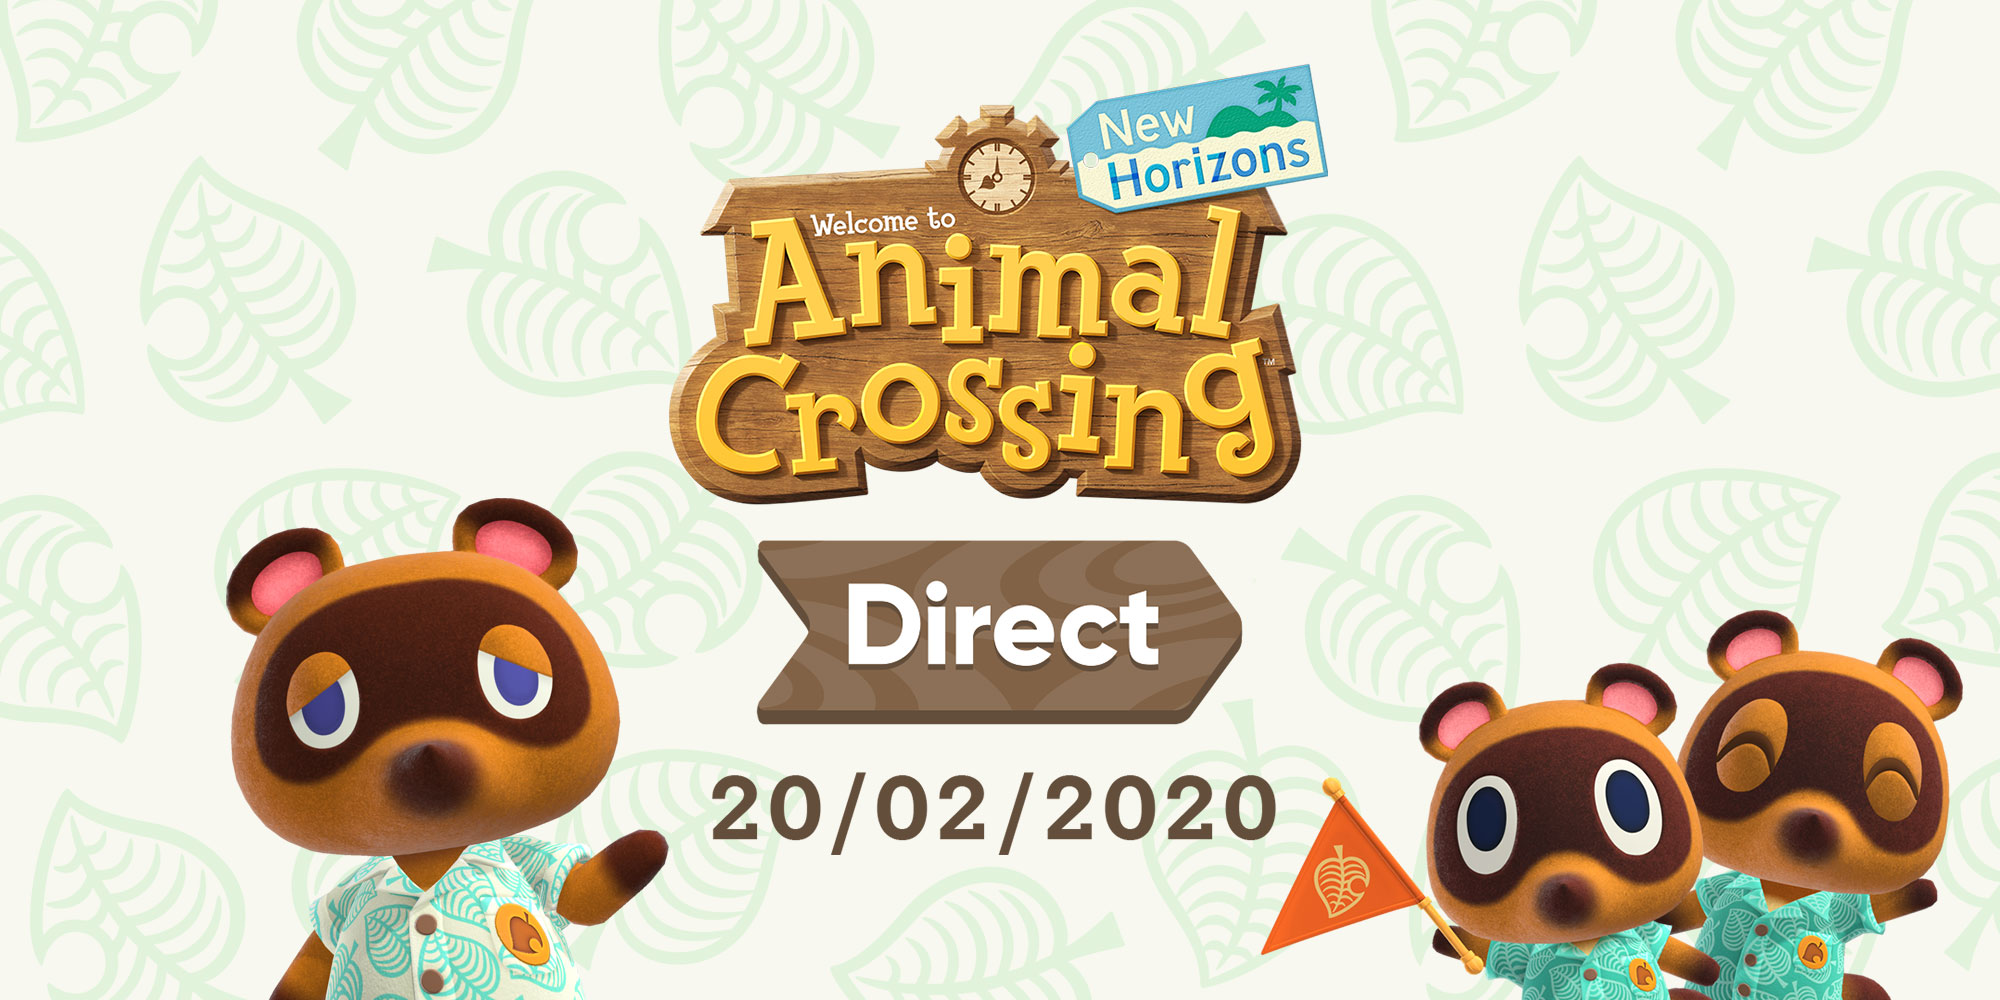 Un nuovo Nintendo Direct dedicato ad Animal Crossing: New Horizons andrà in onda il 20 febbraio!